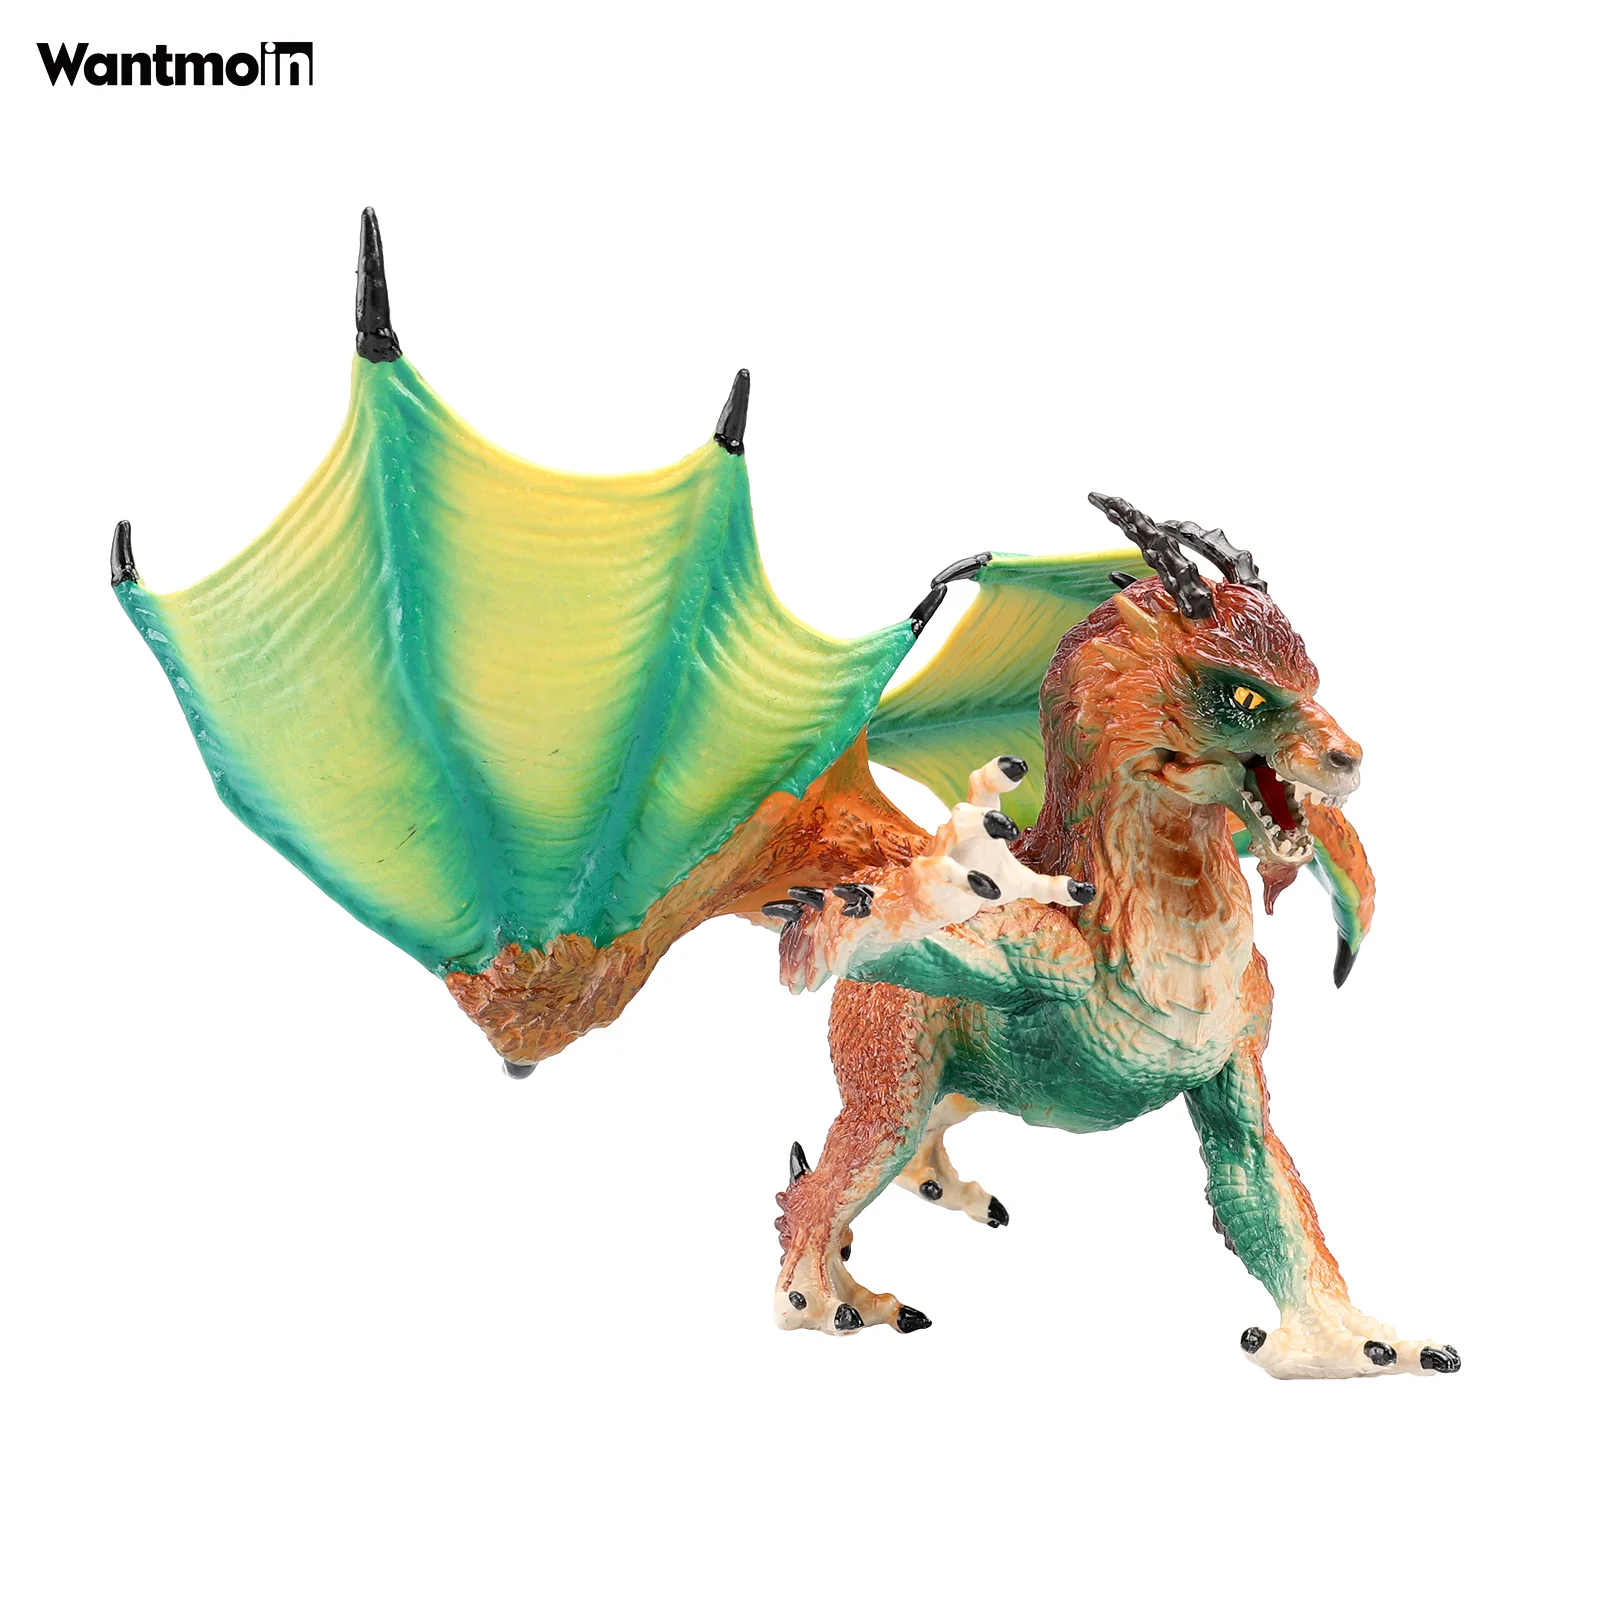 Игрушка Дракон Неукротимых Легенд Wantmoin - пластиковая фигурка животного для коллекции, подарка, декора дома и праздничных сувениров.